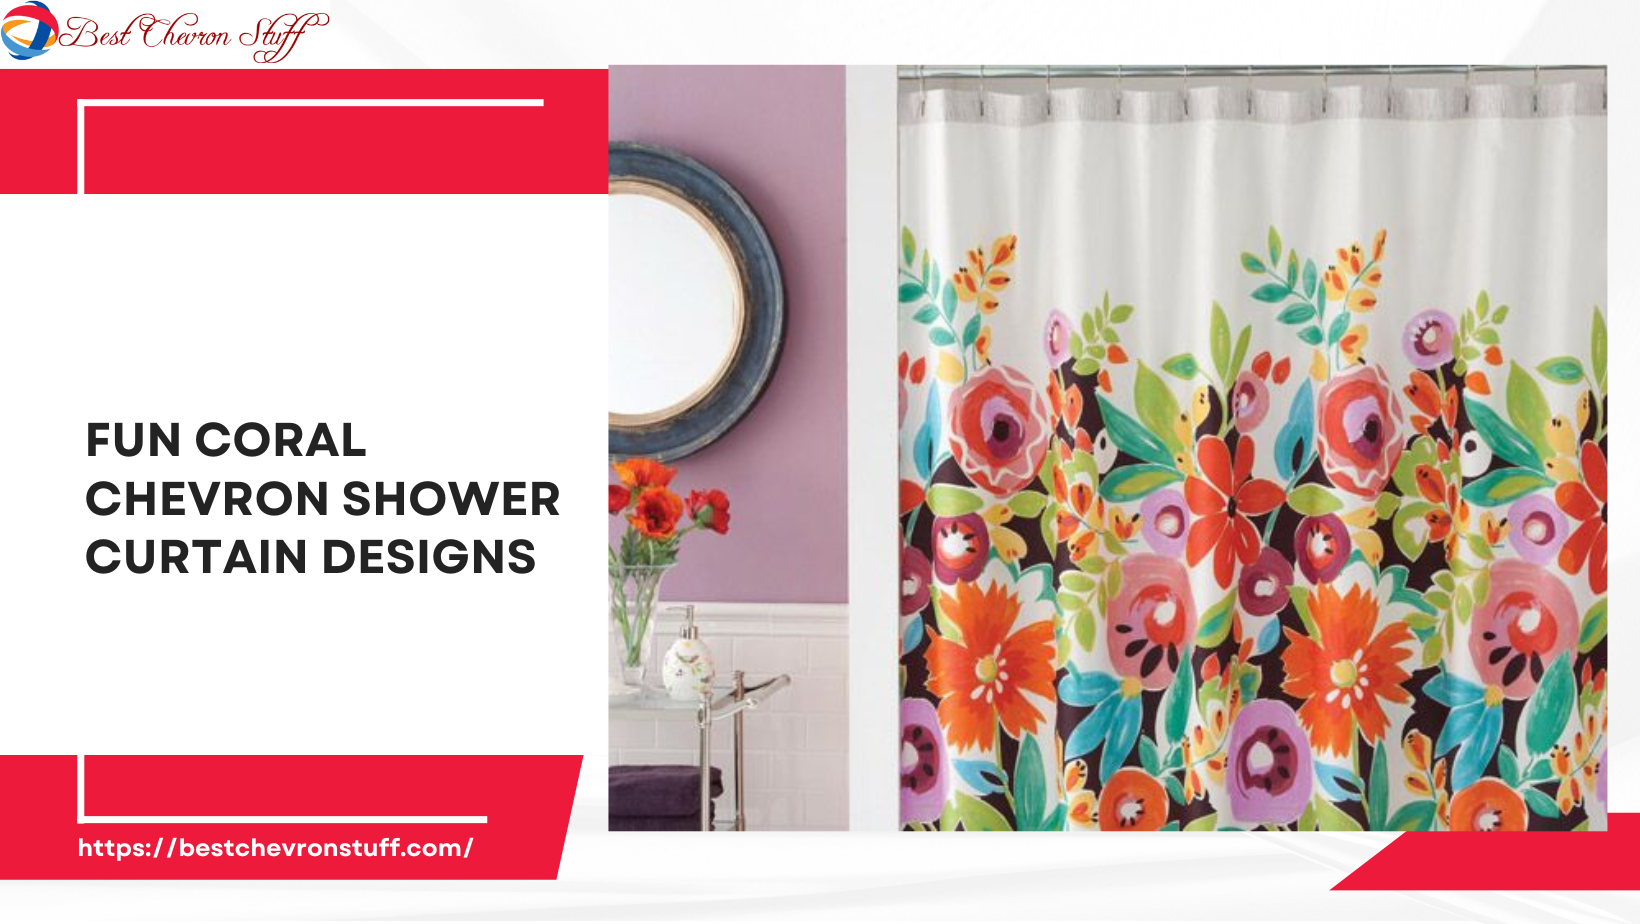 Fun Coral Chevron Shower Curtain Designs